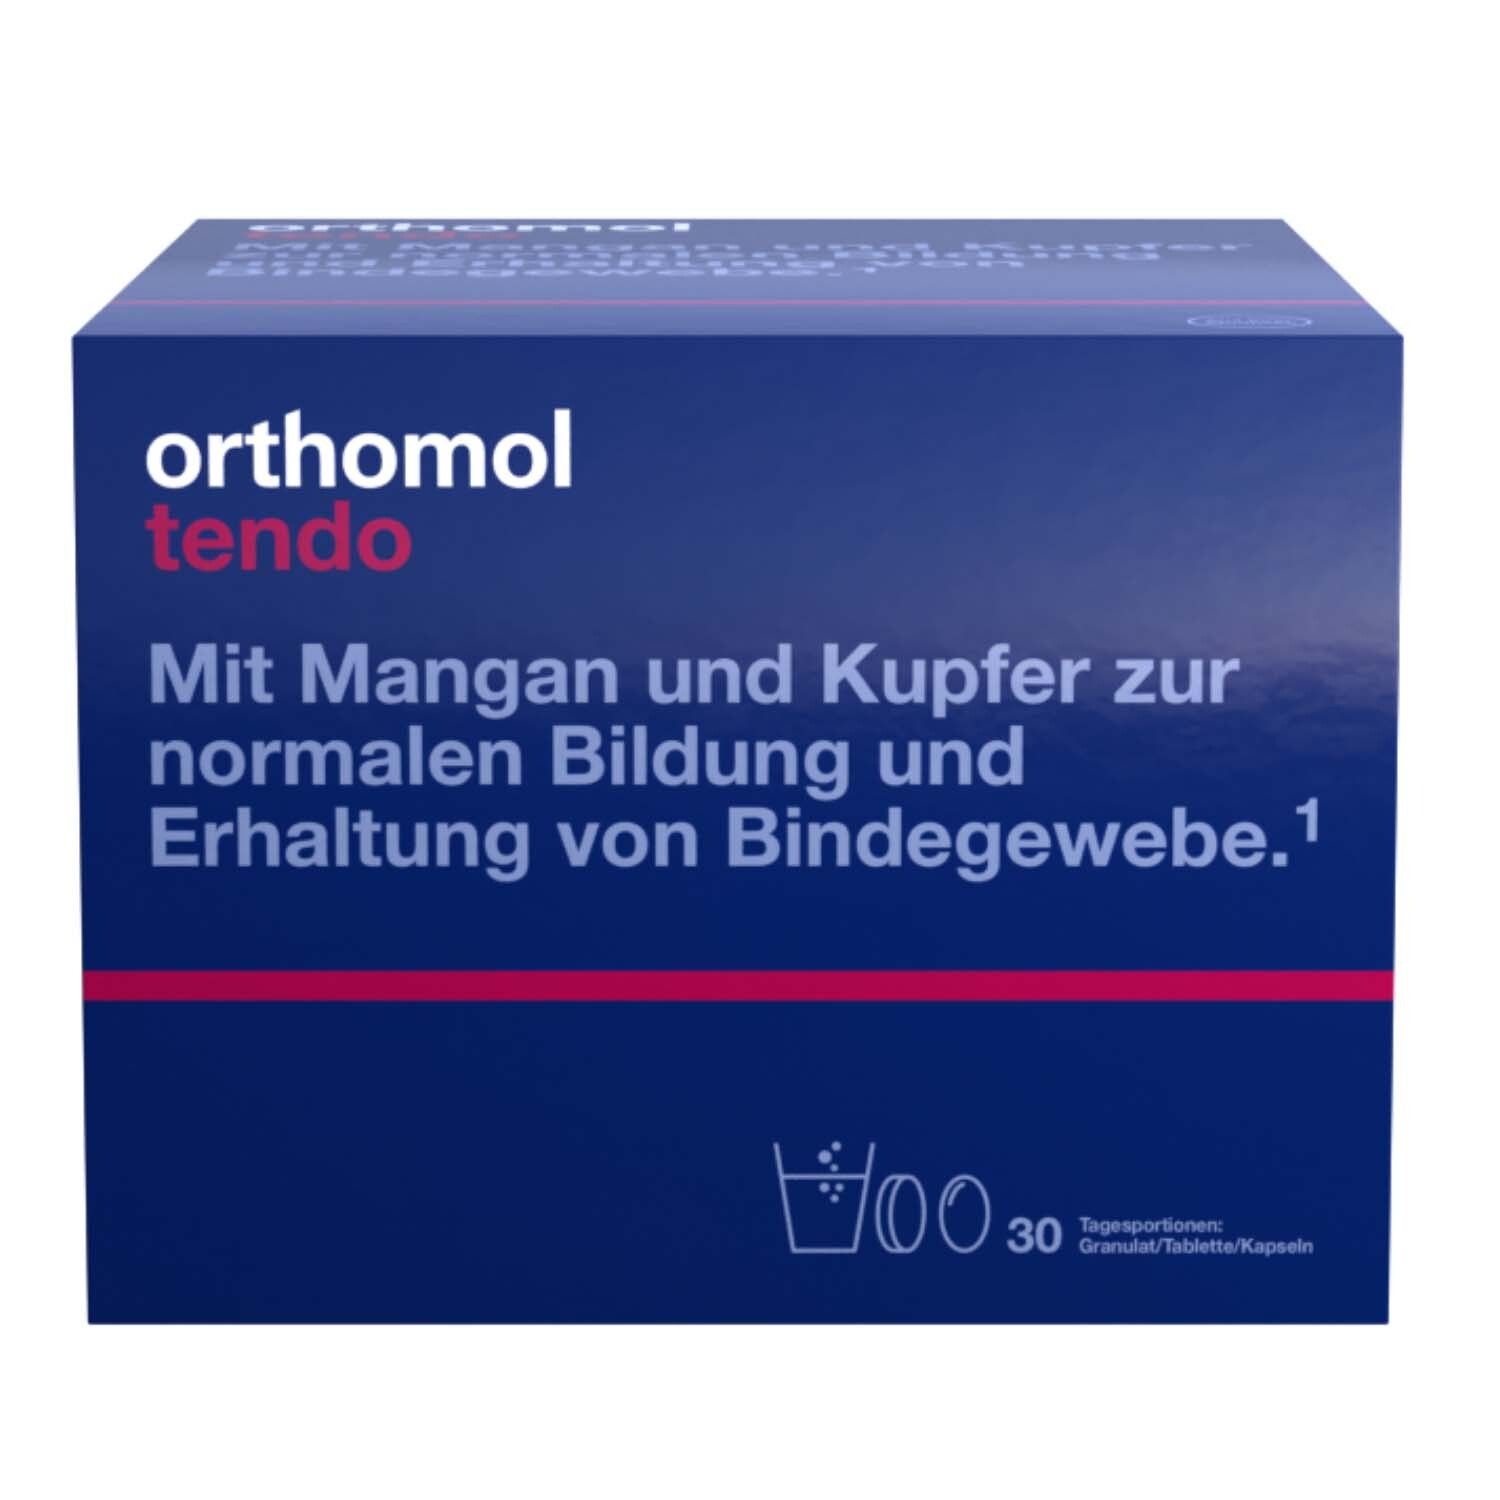 Orthomol Tendo - für normale Bildung und Erhalt von Bindegewebe - Mikronährstoffe, Mangan und Kupfer - Granulat/Tablette